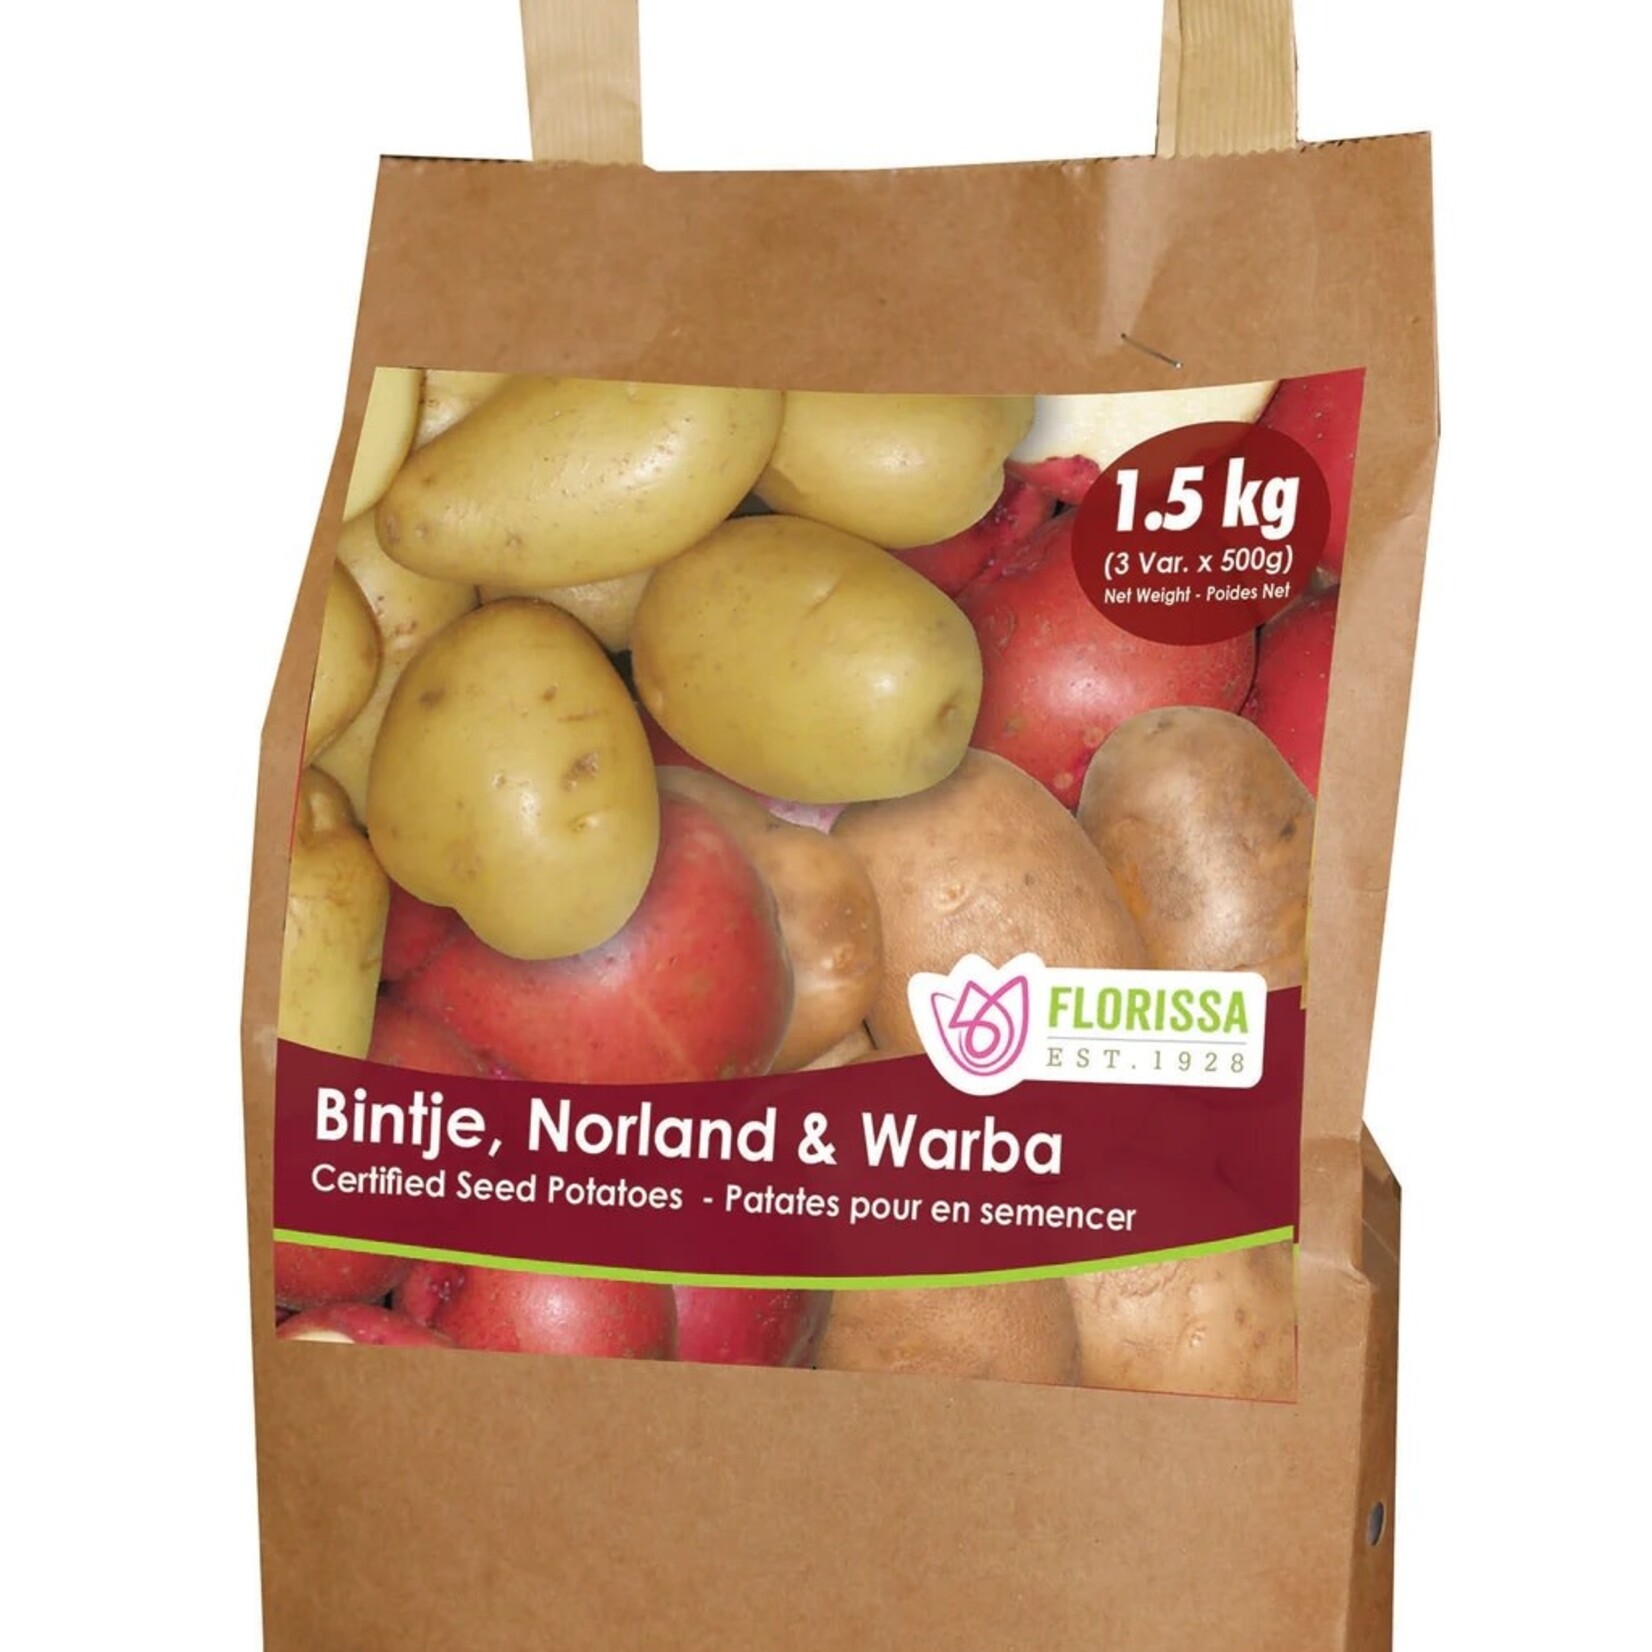 Van Noort Combo Potato Sack C2) - 500g Each of Bintje, Norland, Warba